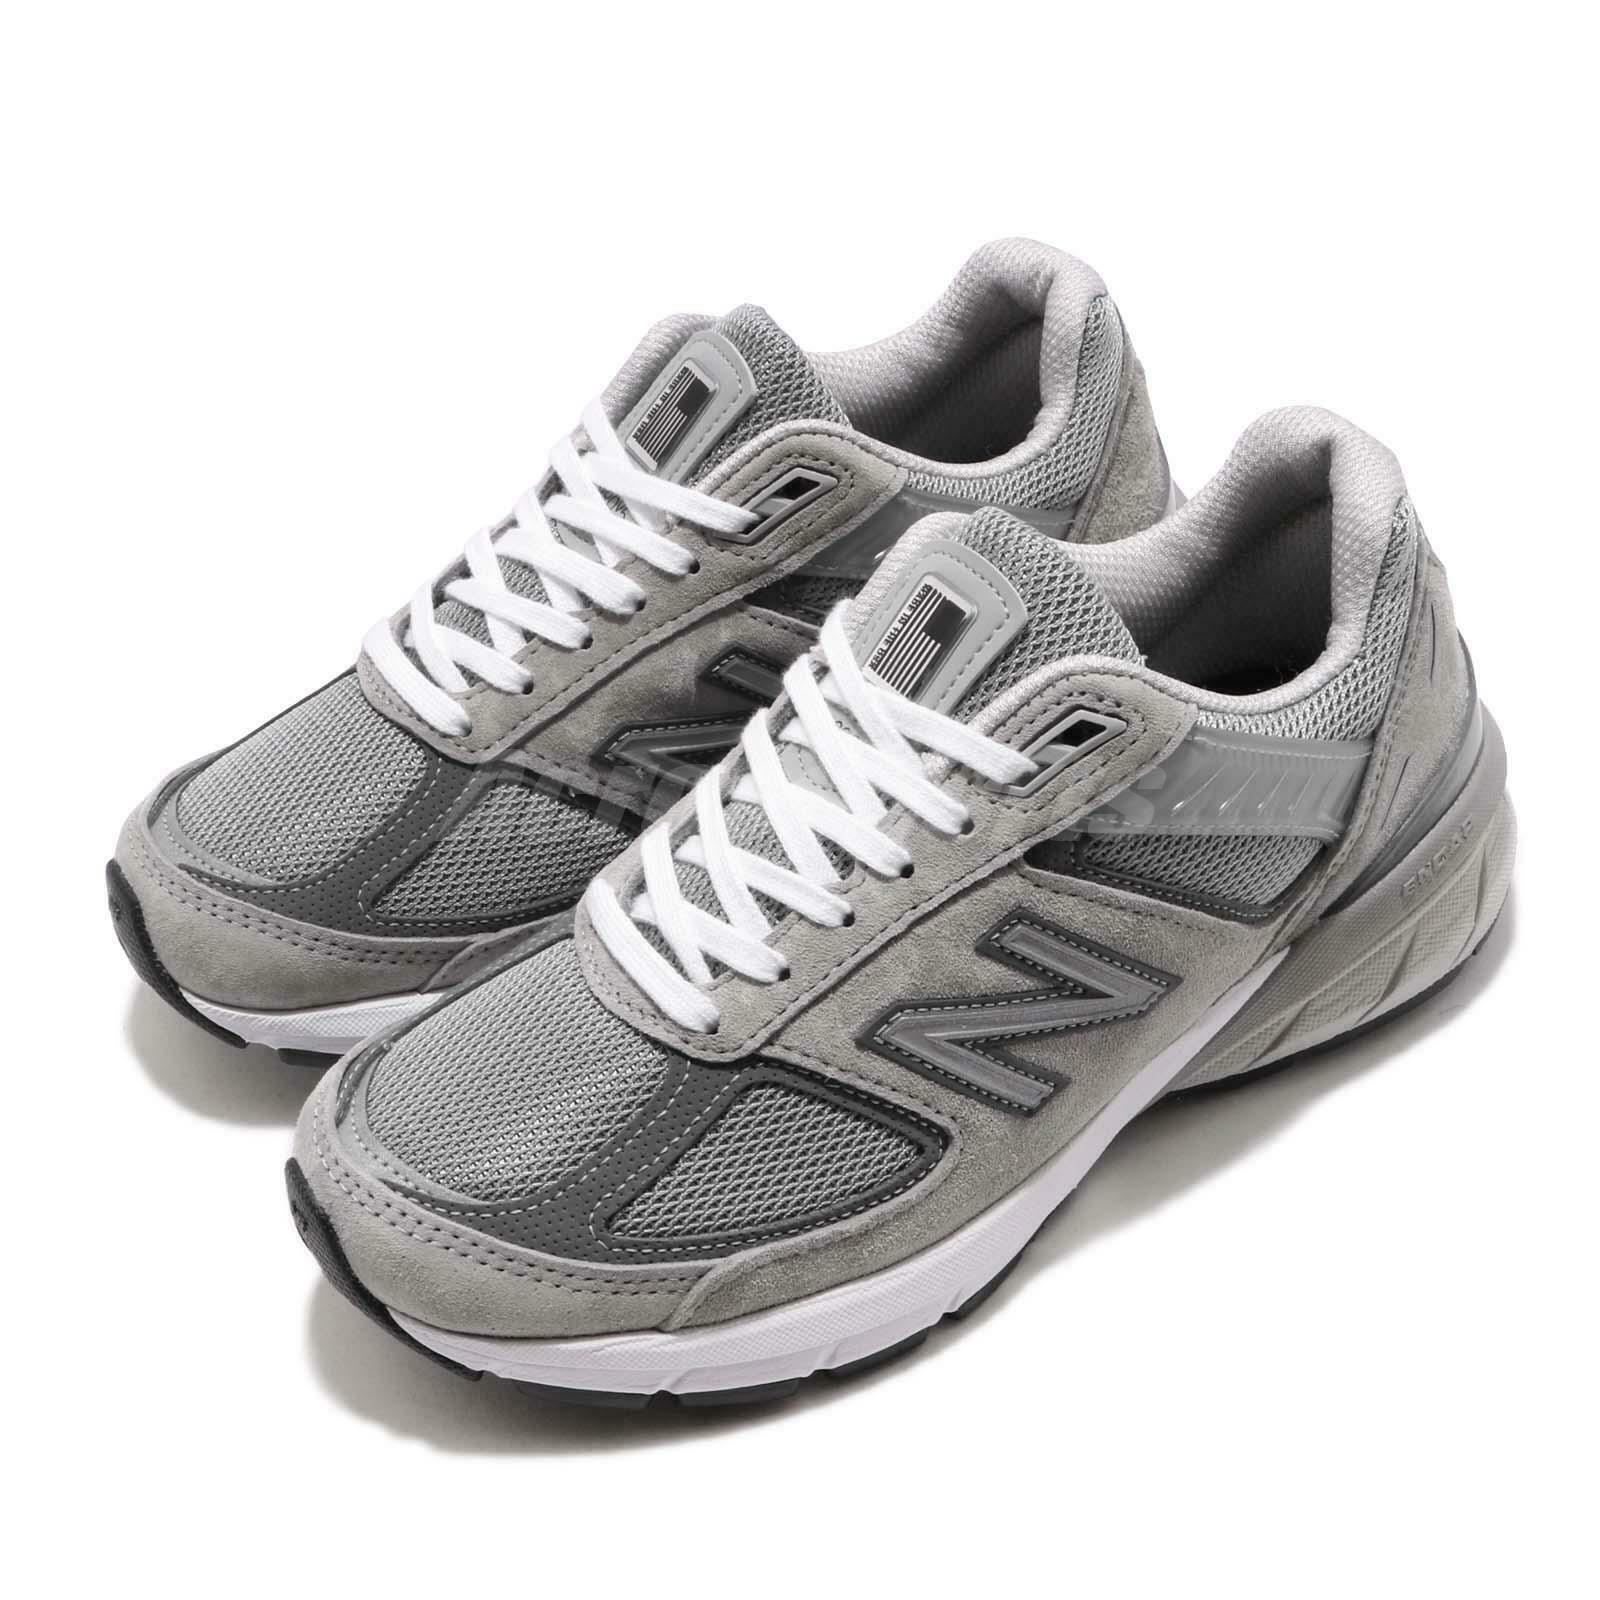 New Balance 990 v5 Grey W